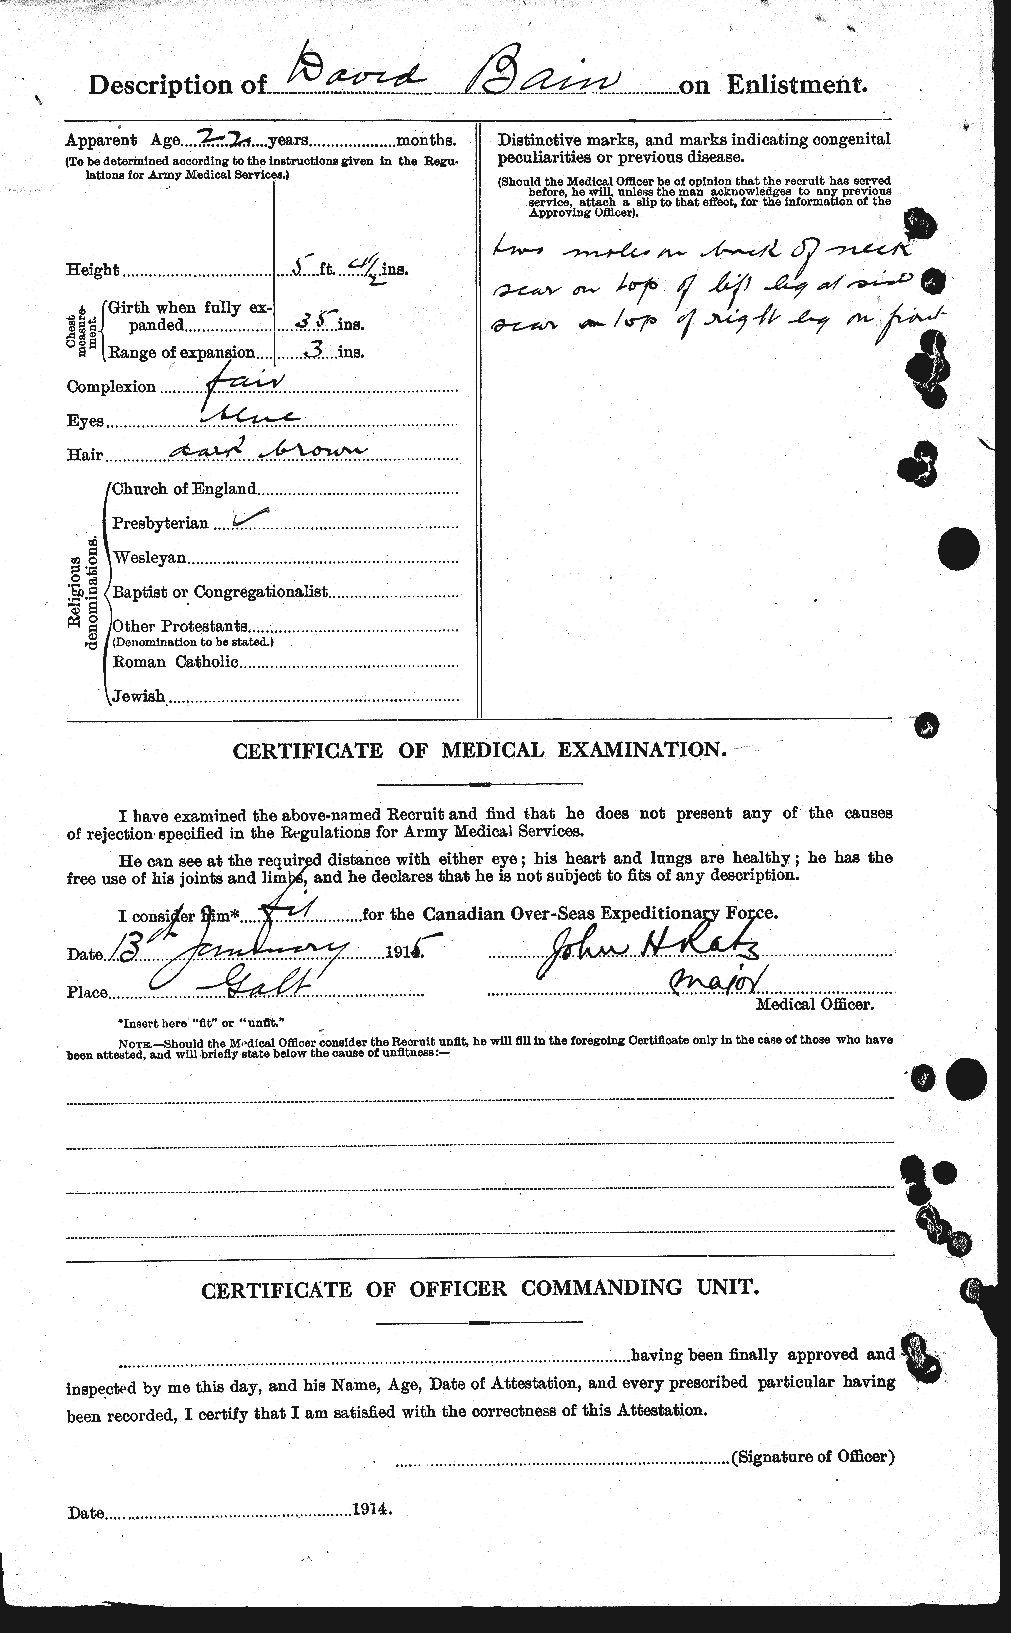 Dossiers du Personnel de la Première Guerre mondiale - CEC 226154b